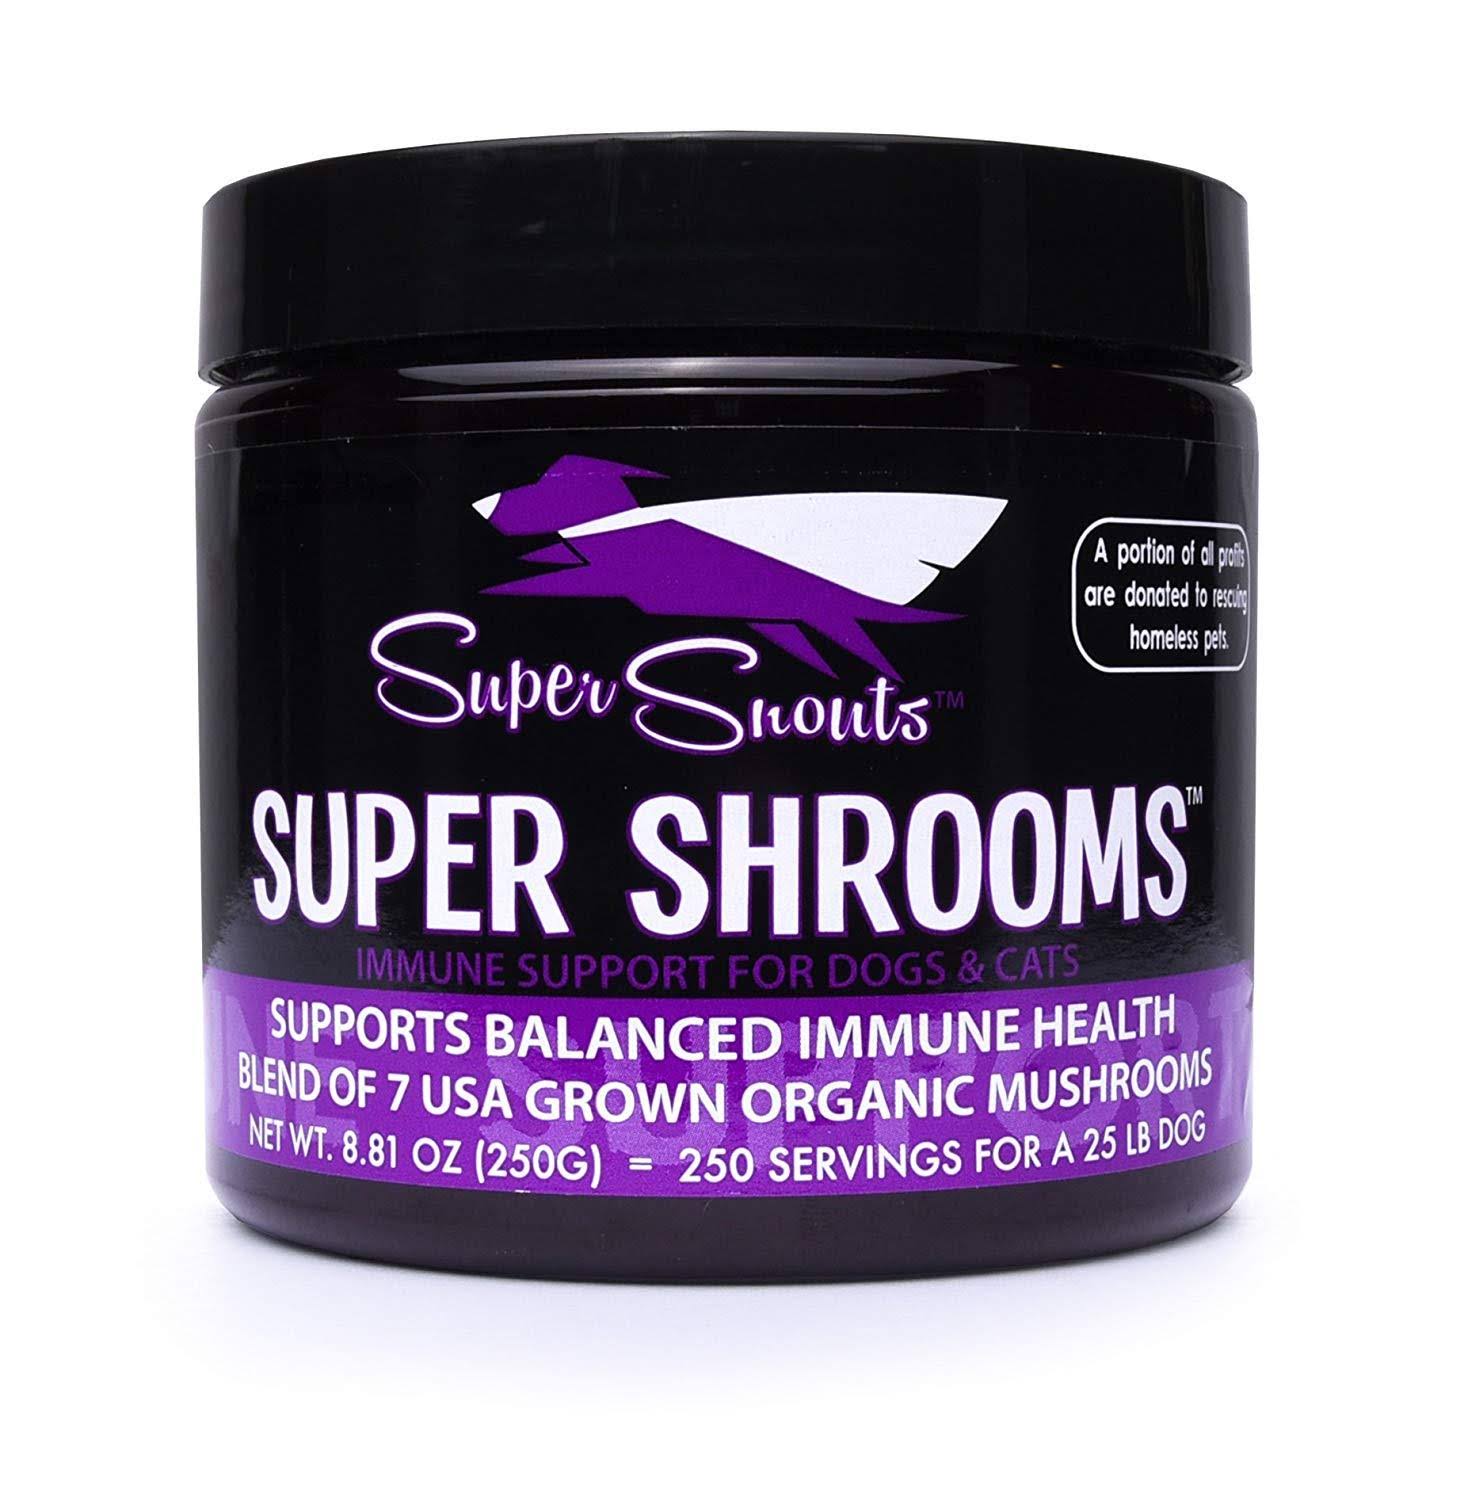 Super Snouts Super Shrooms 150G.